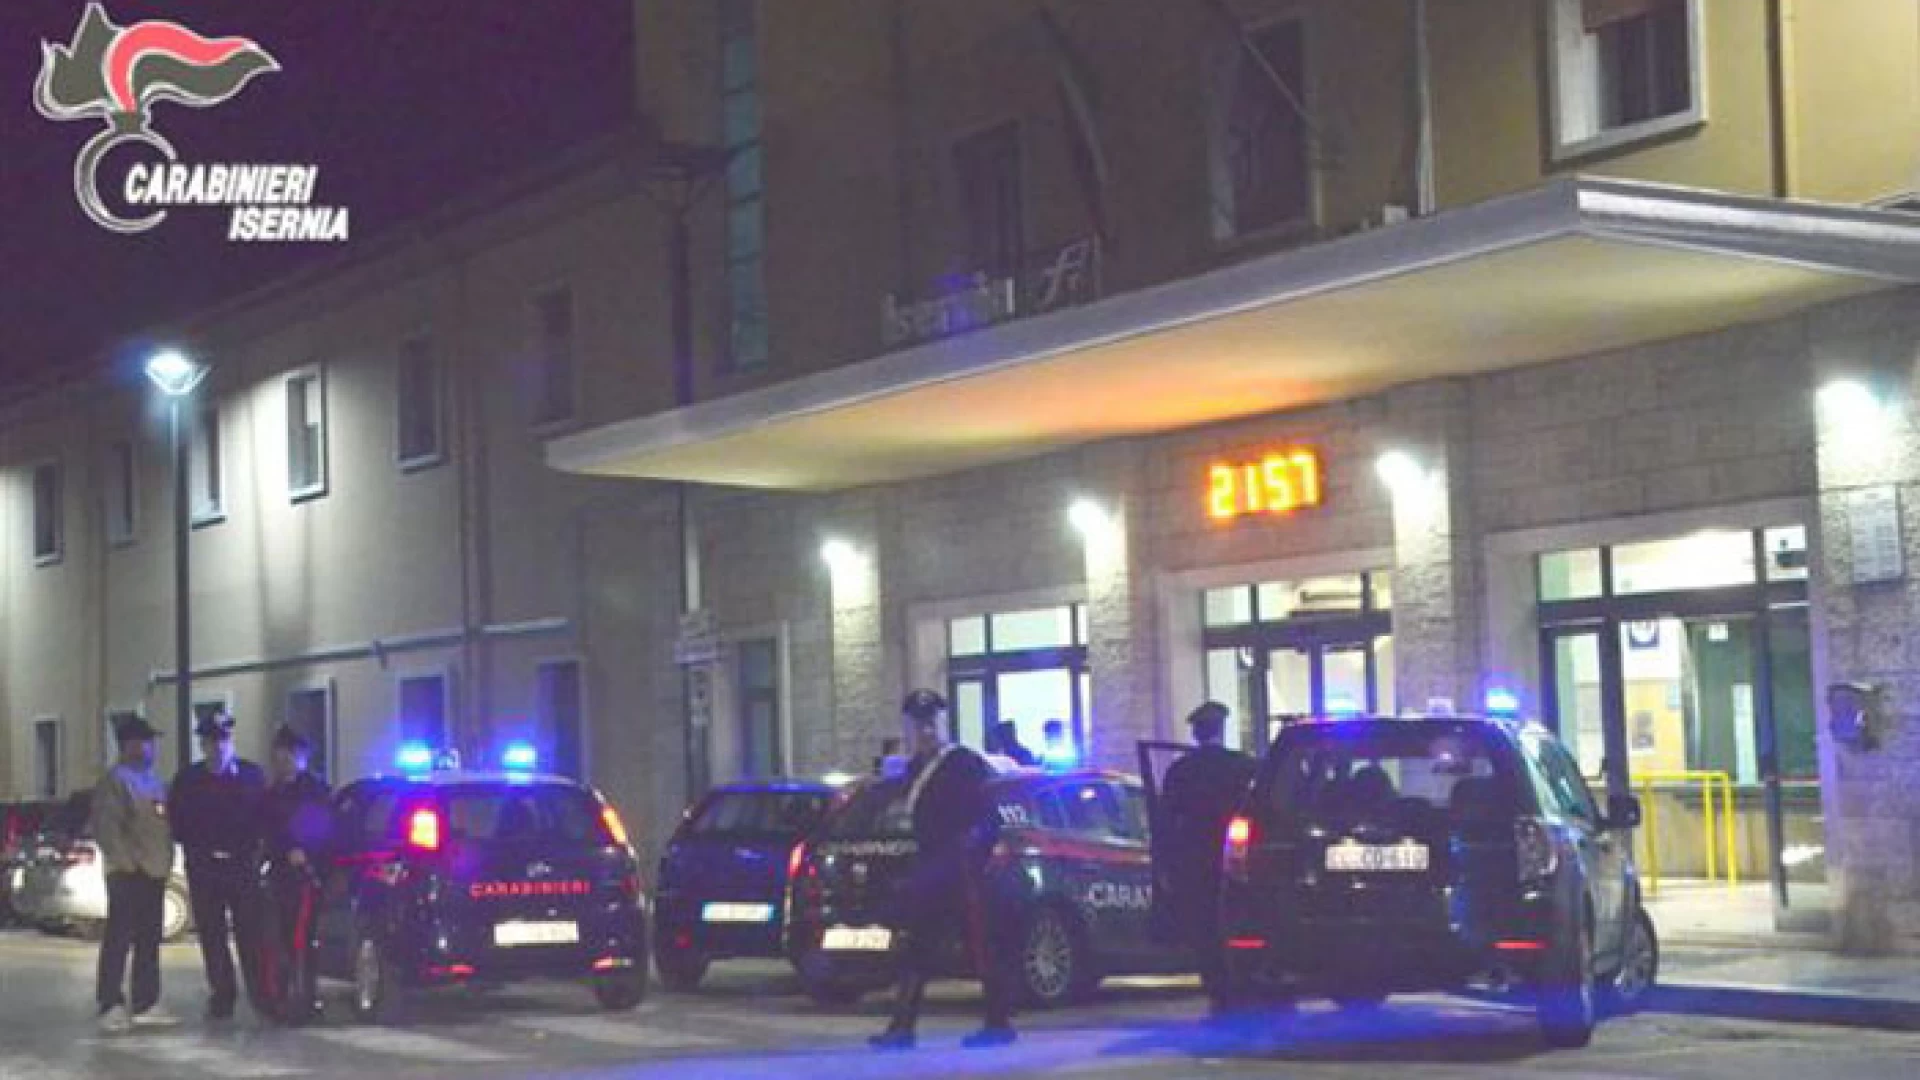 Isernia: Controlli presso la Stazione Ferroviaria e attività commerciali, denunciati dai Carabinieri tre stranieri per “accattonaggio”.